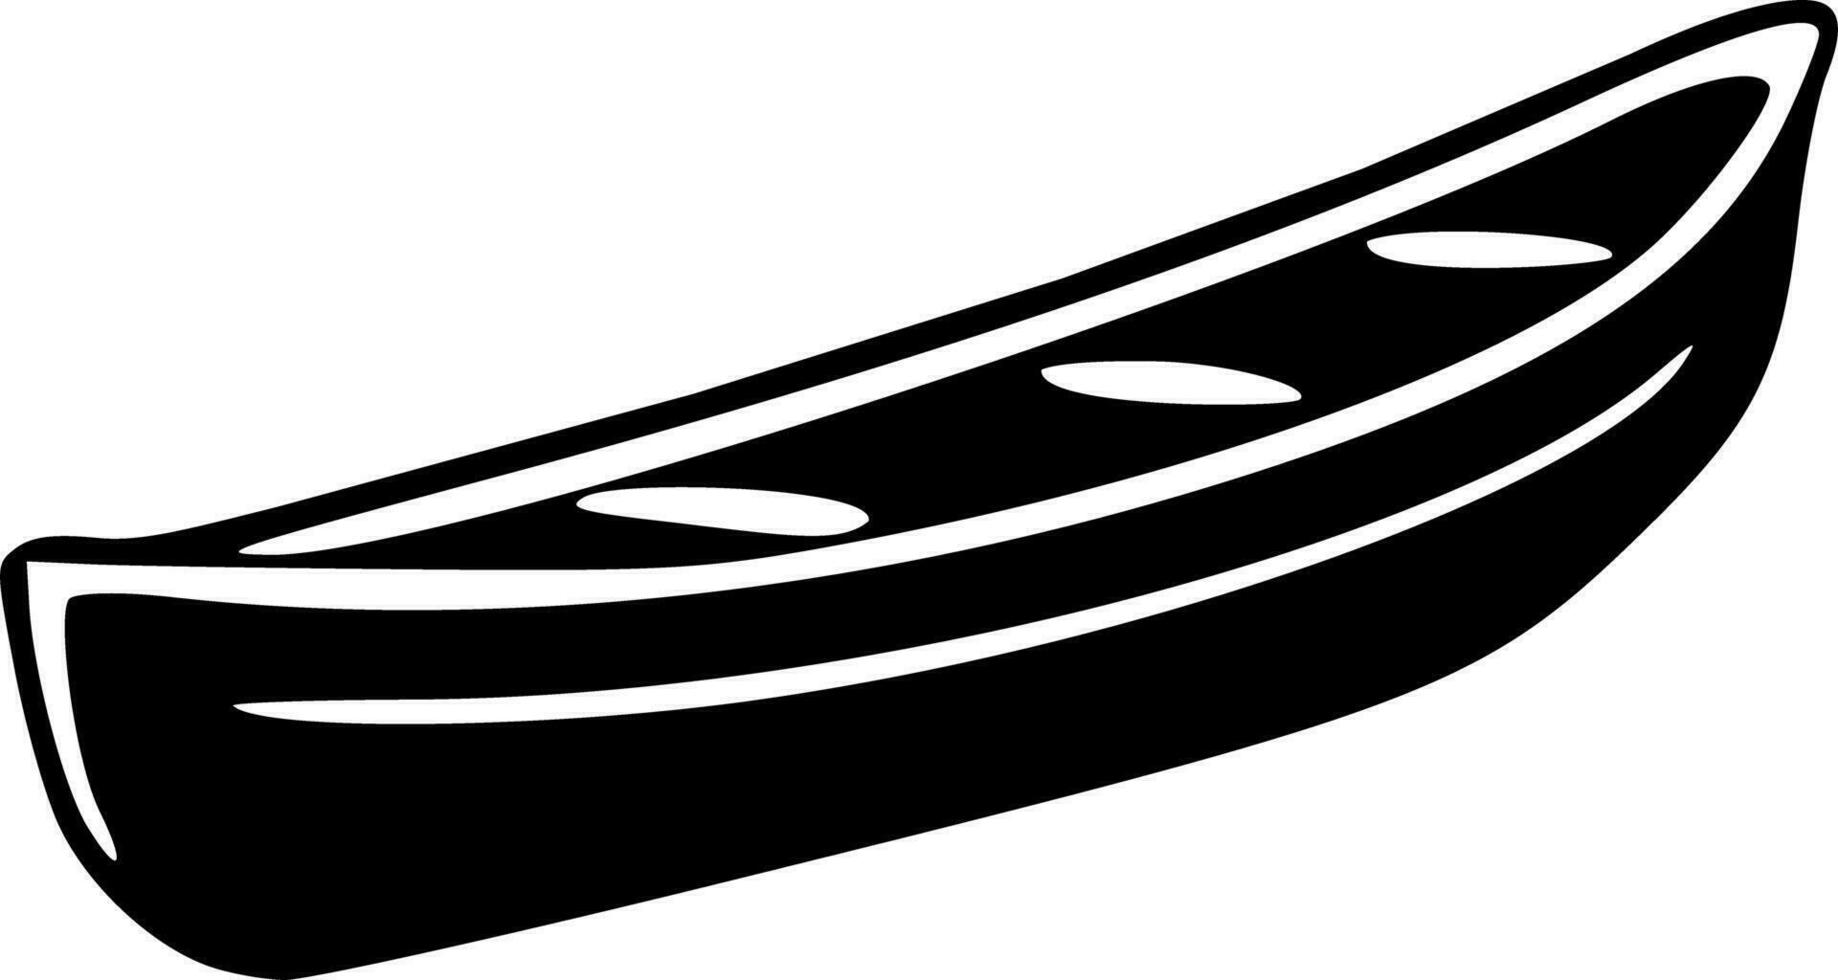 båt silhuett svartvit 3d vektor illustration